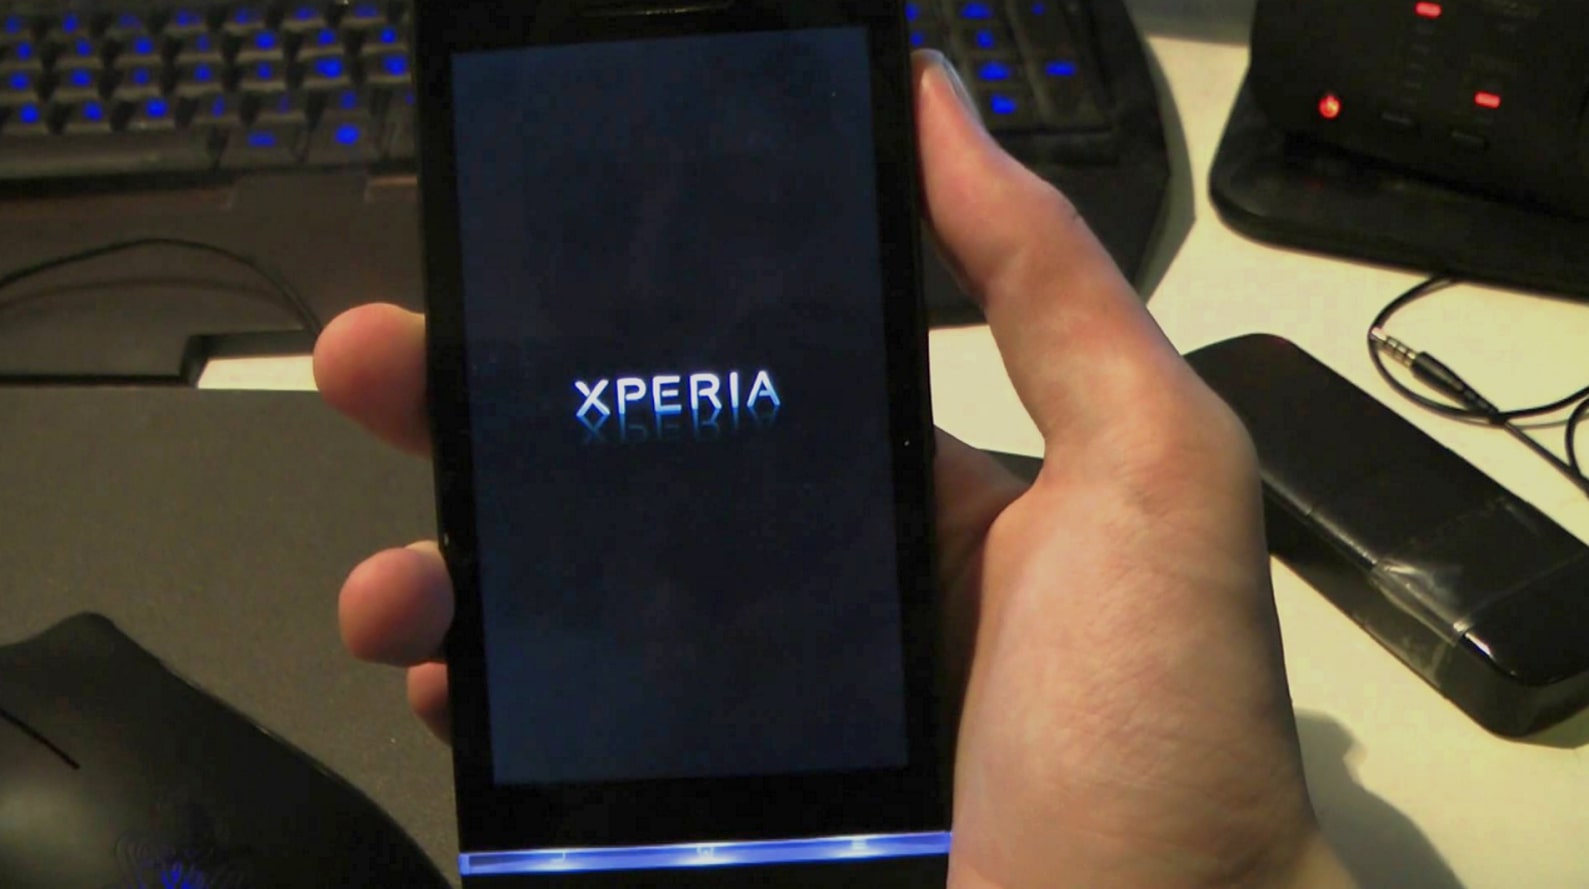 Sony xperia m4 aqua unlock code generator